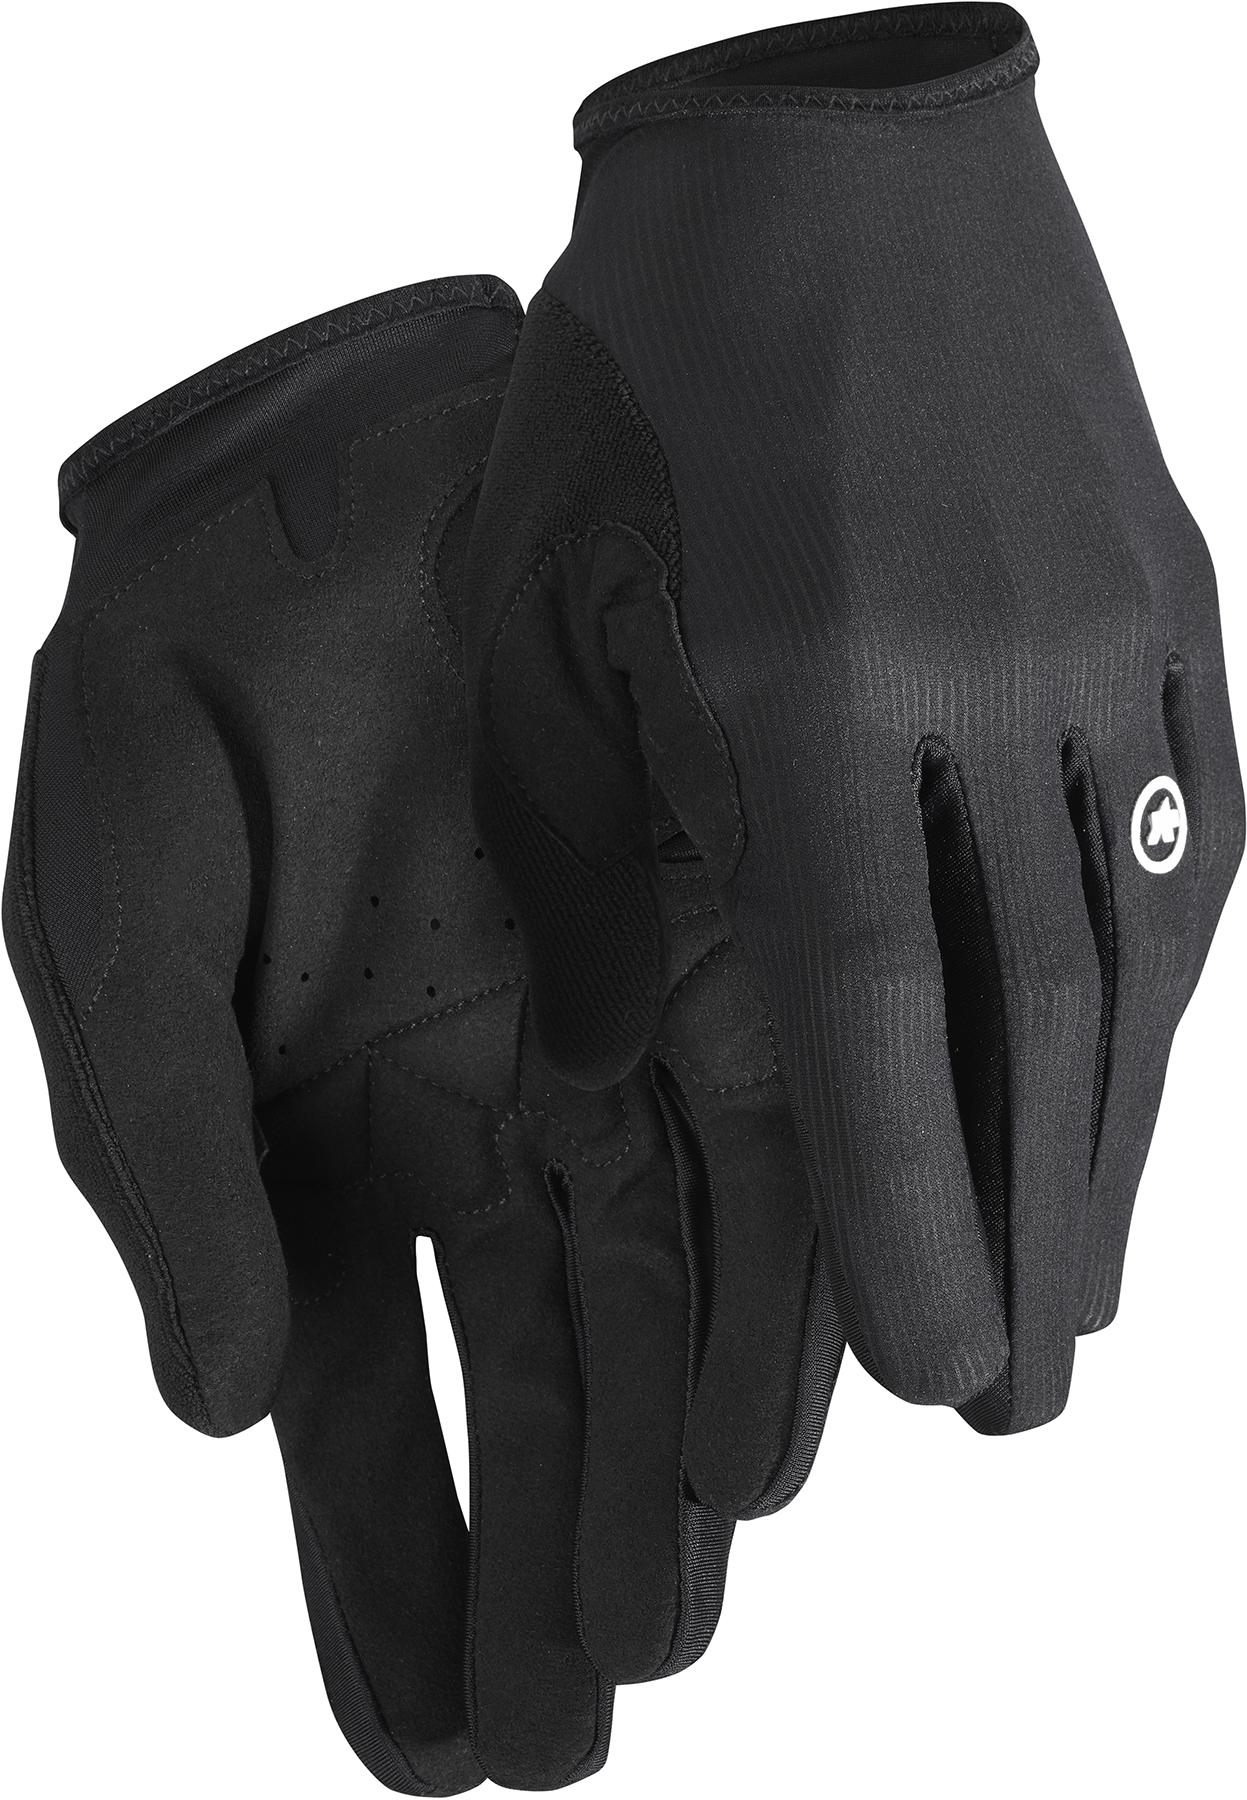 Assos Rs Long Fingered Gloves Targa  Black Series